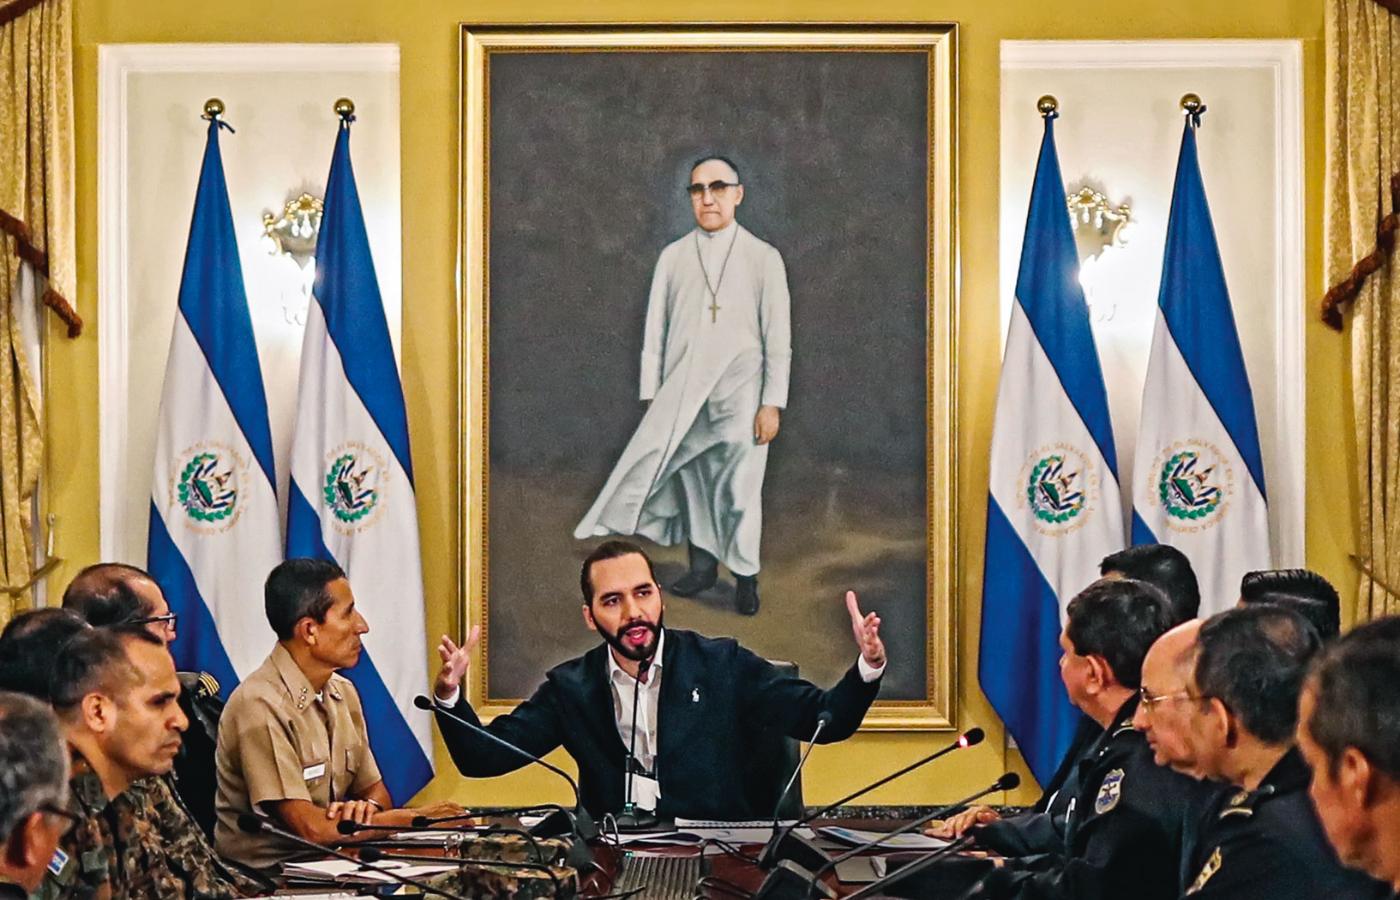 Posiedzenie gabinetu prezydenta. W tle portret duchowego przywódcy teologii wyzwolenia abp. Oscara Romero, zastrzelonego w 1980 r.